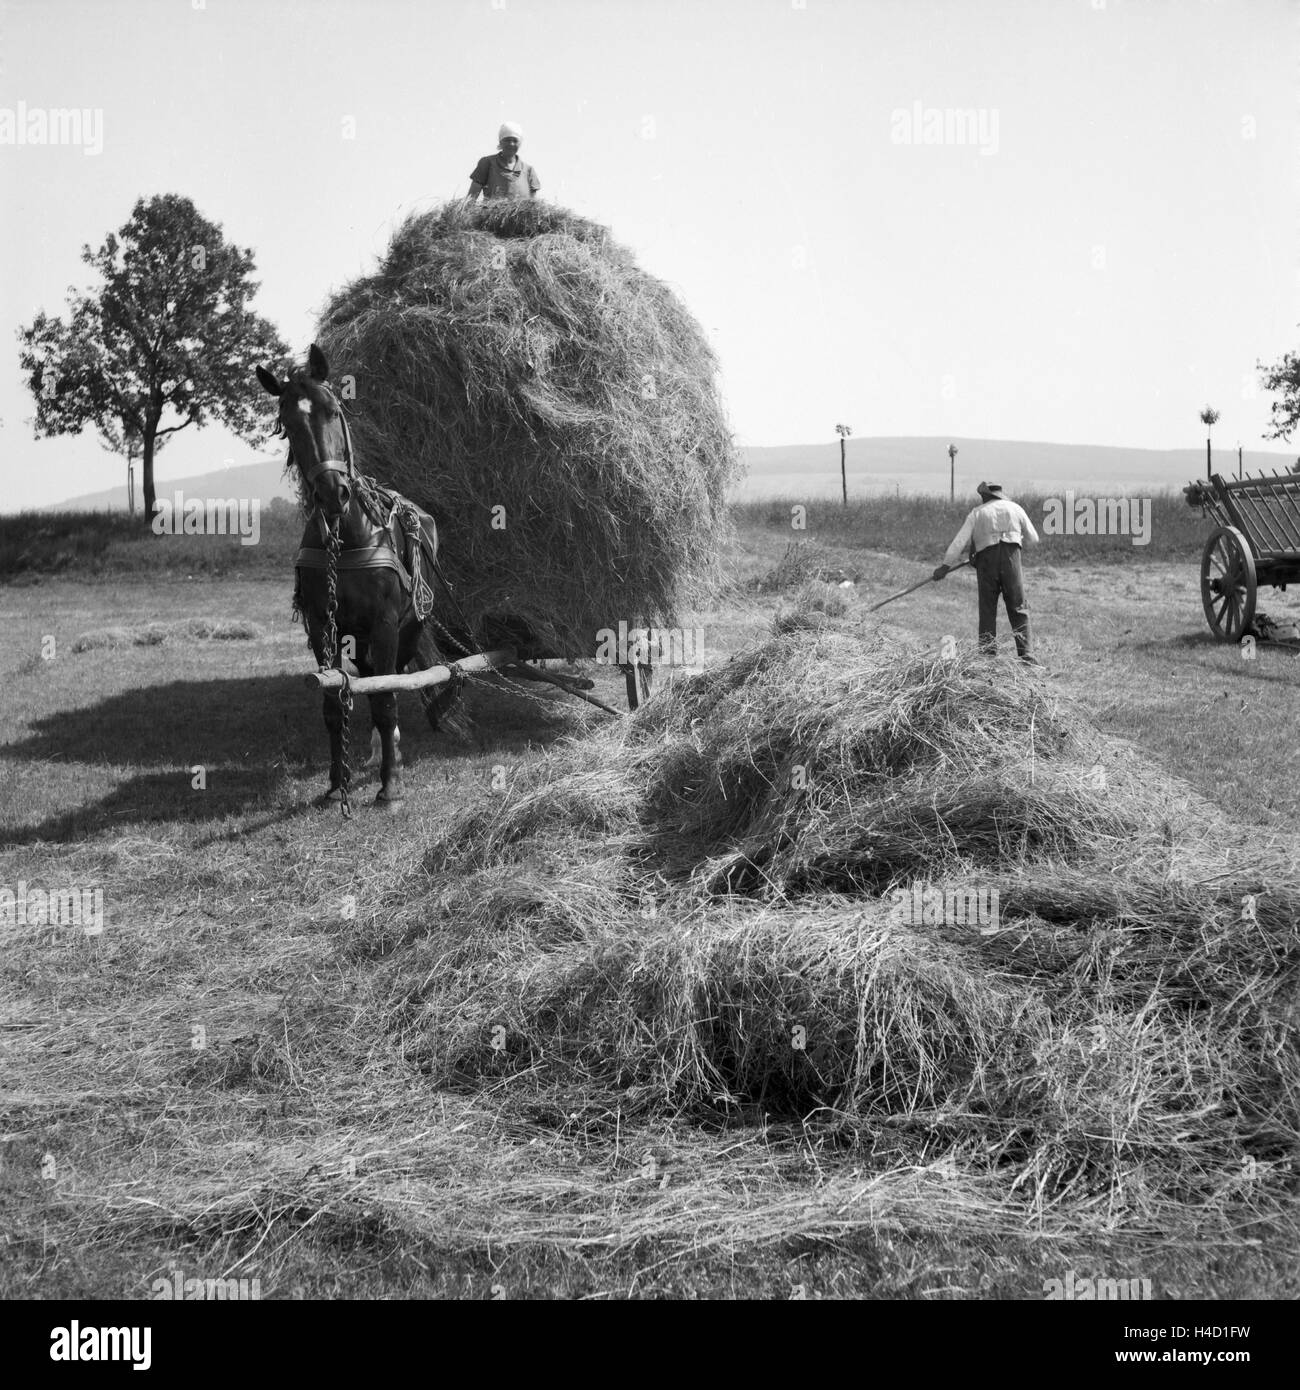 Bauern bei der Heuernte in Westfalen, Deutschland 1930er Jahre. Farmers harvesting hay at Wesfalia, Germany 1930s. Stock Photo